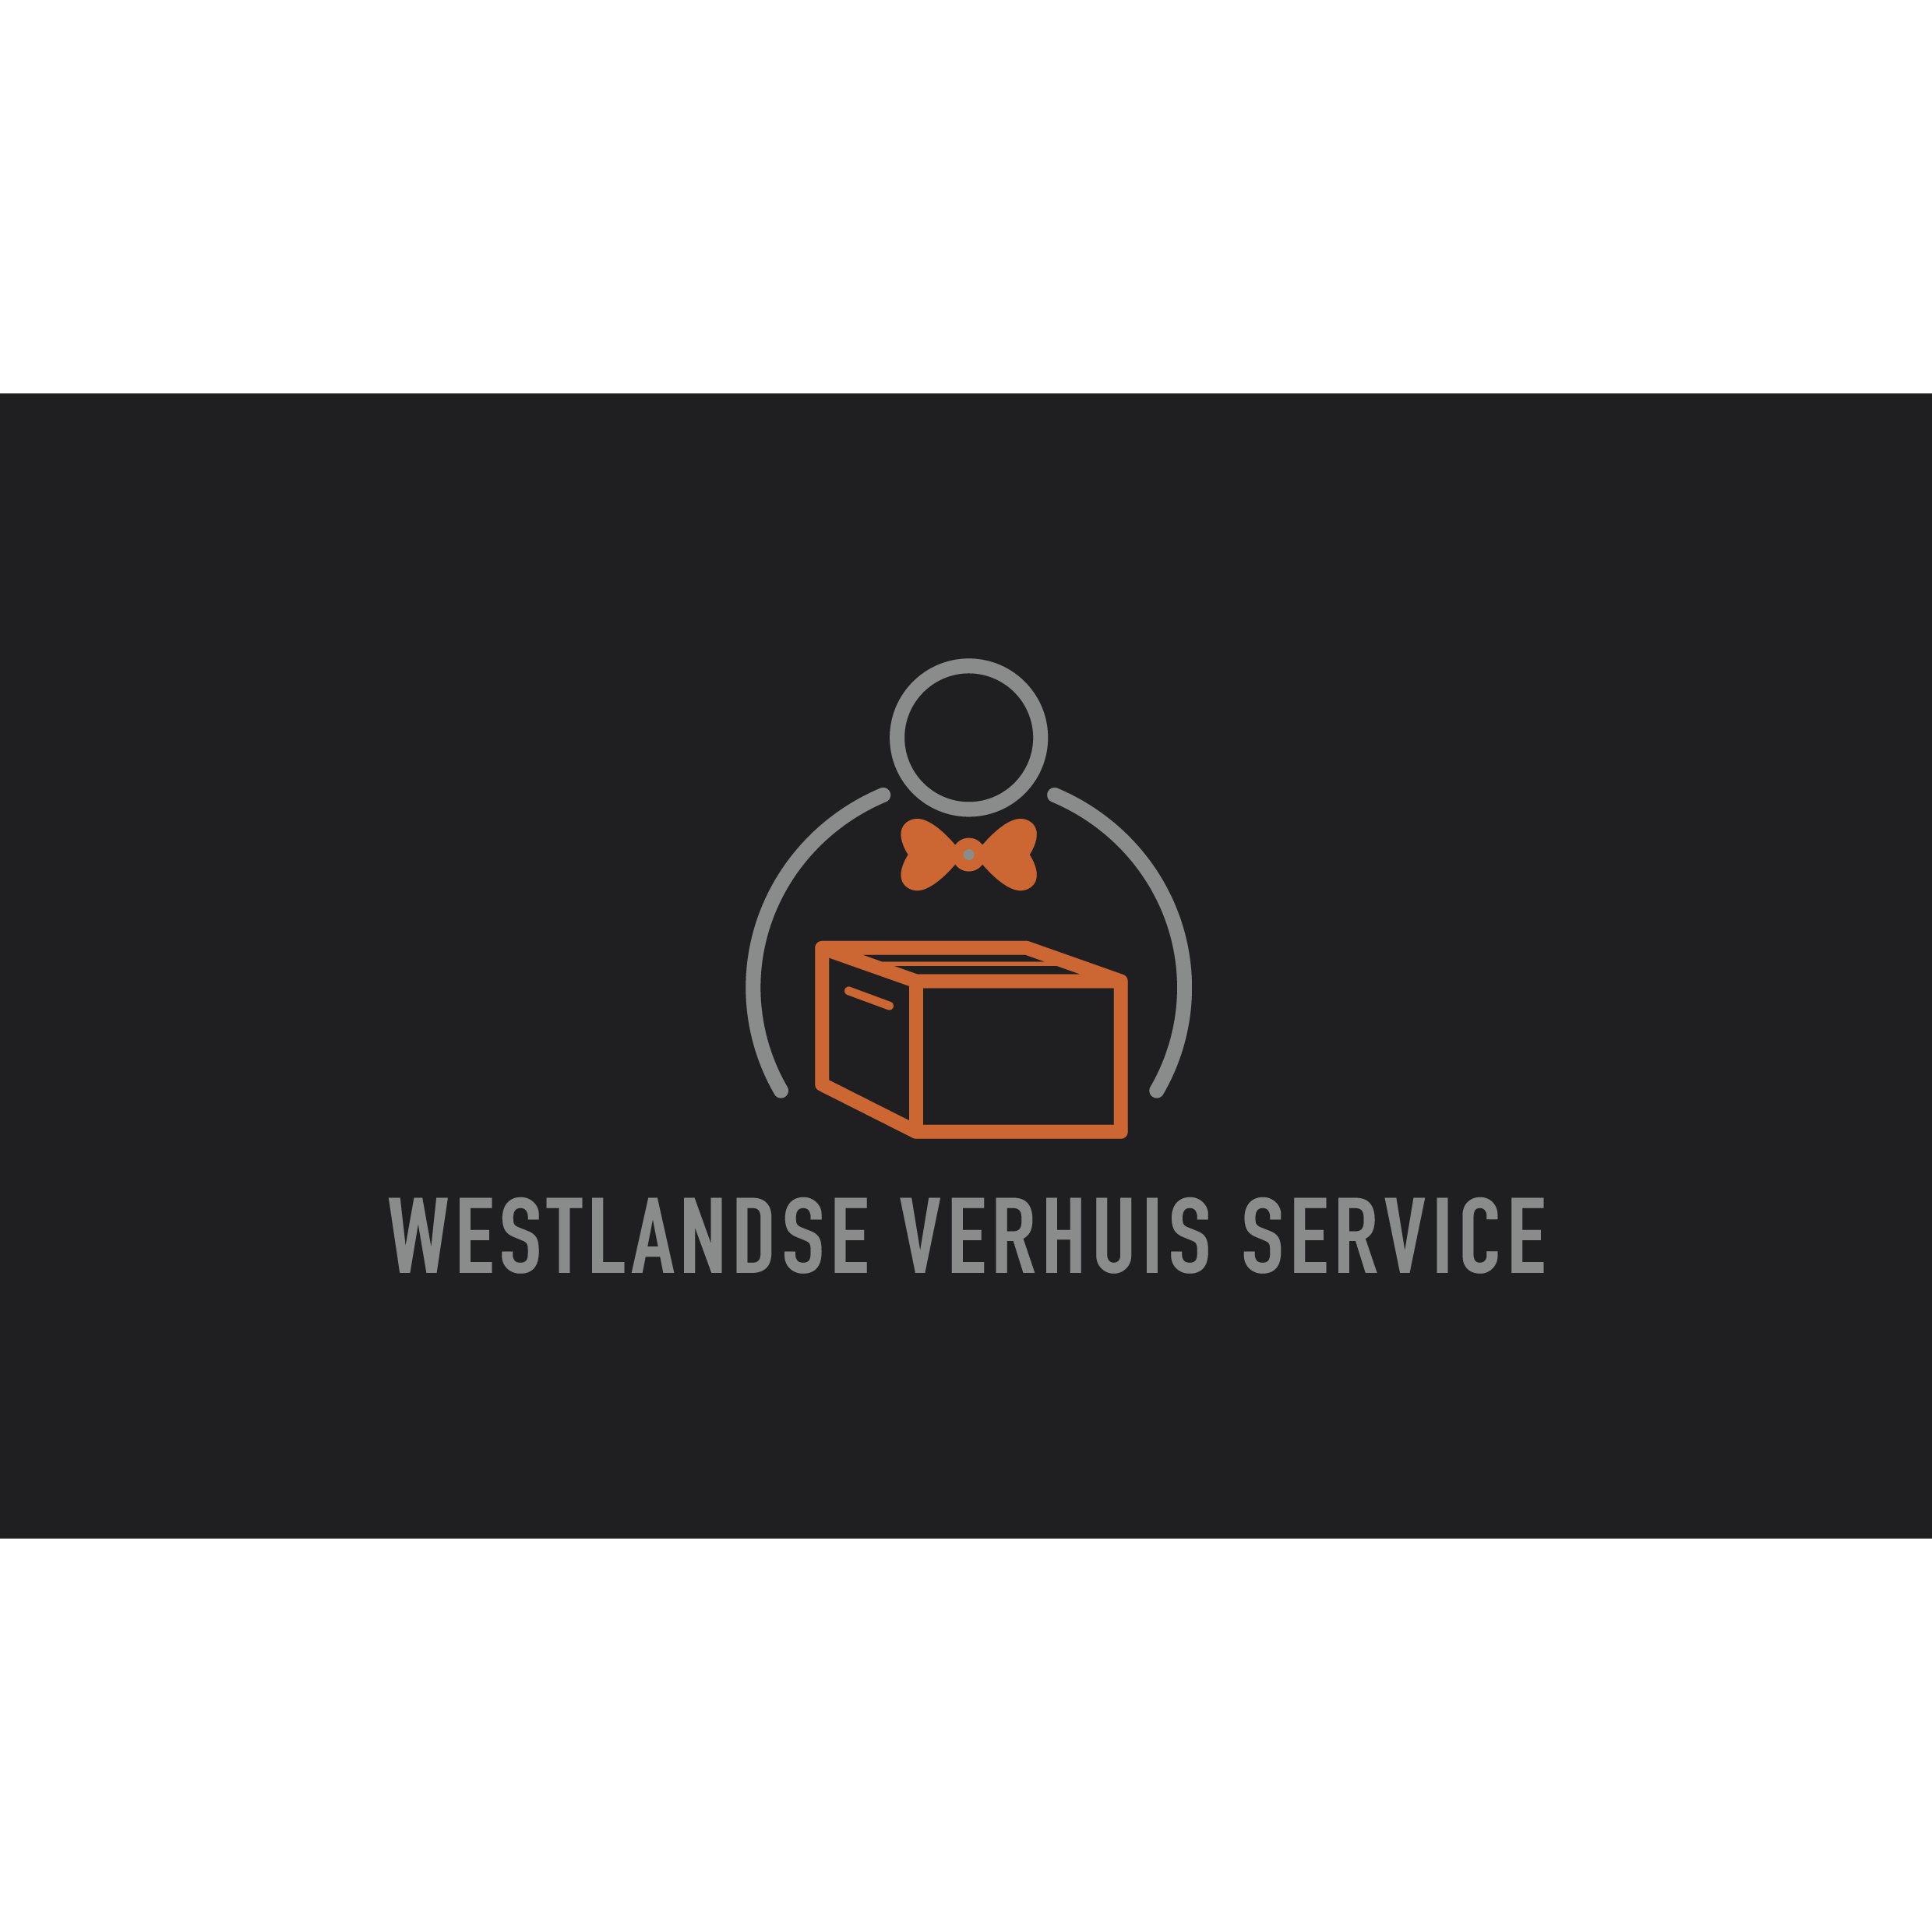 Westlandse Verhuis Service Logo